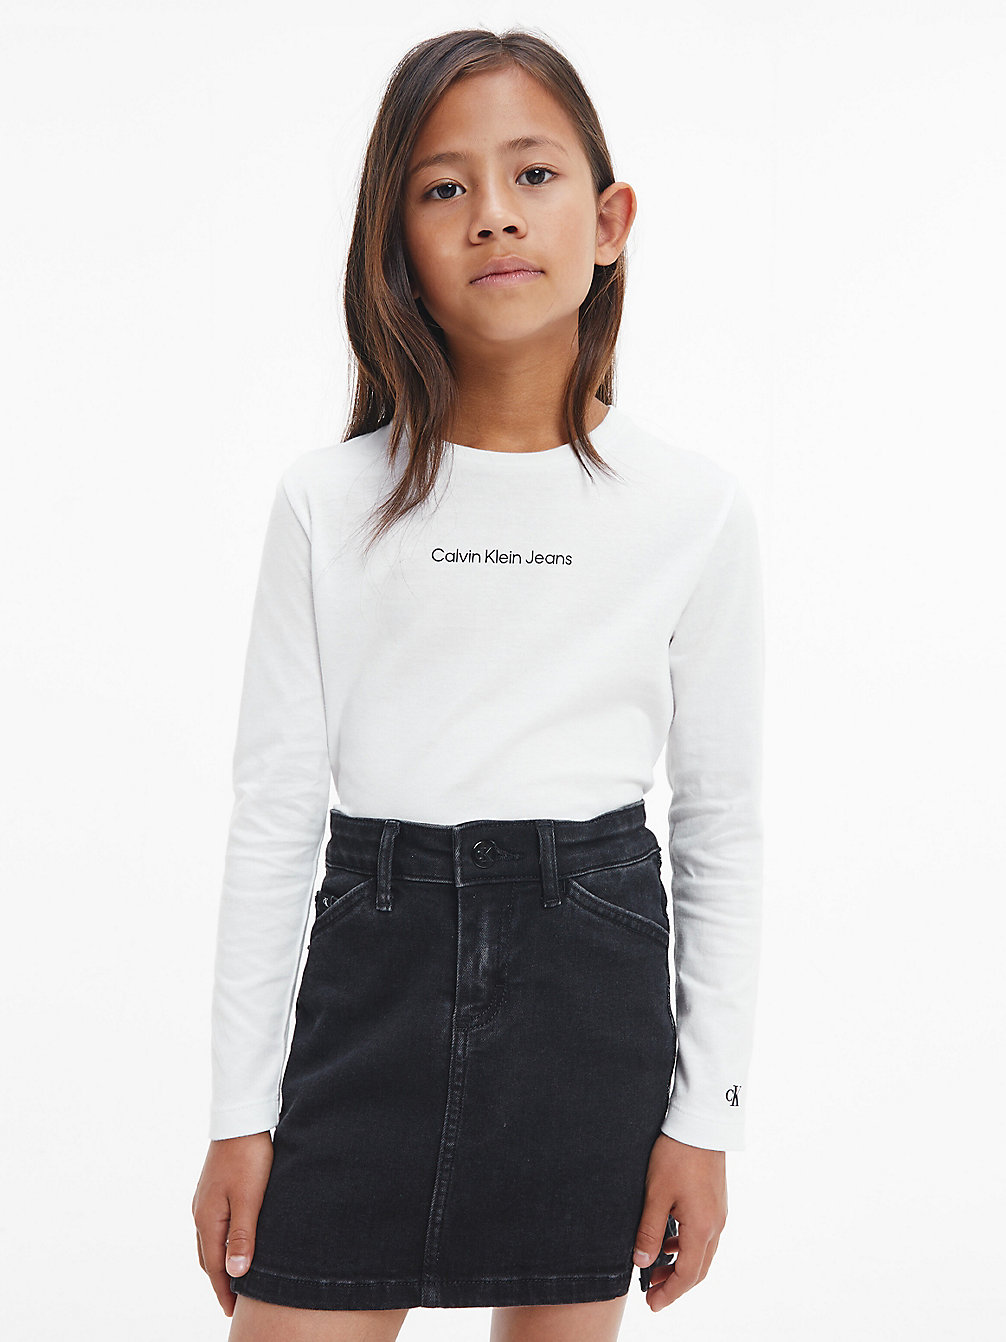 BRIGHT WHITE Langarmshirt Aus Bio-Baumwolle undefined girls Calvin Klein